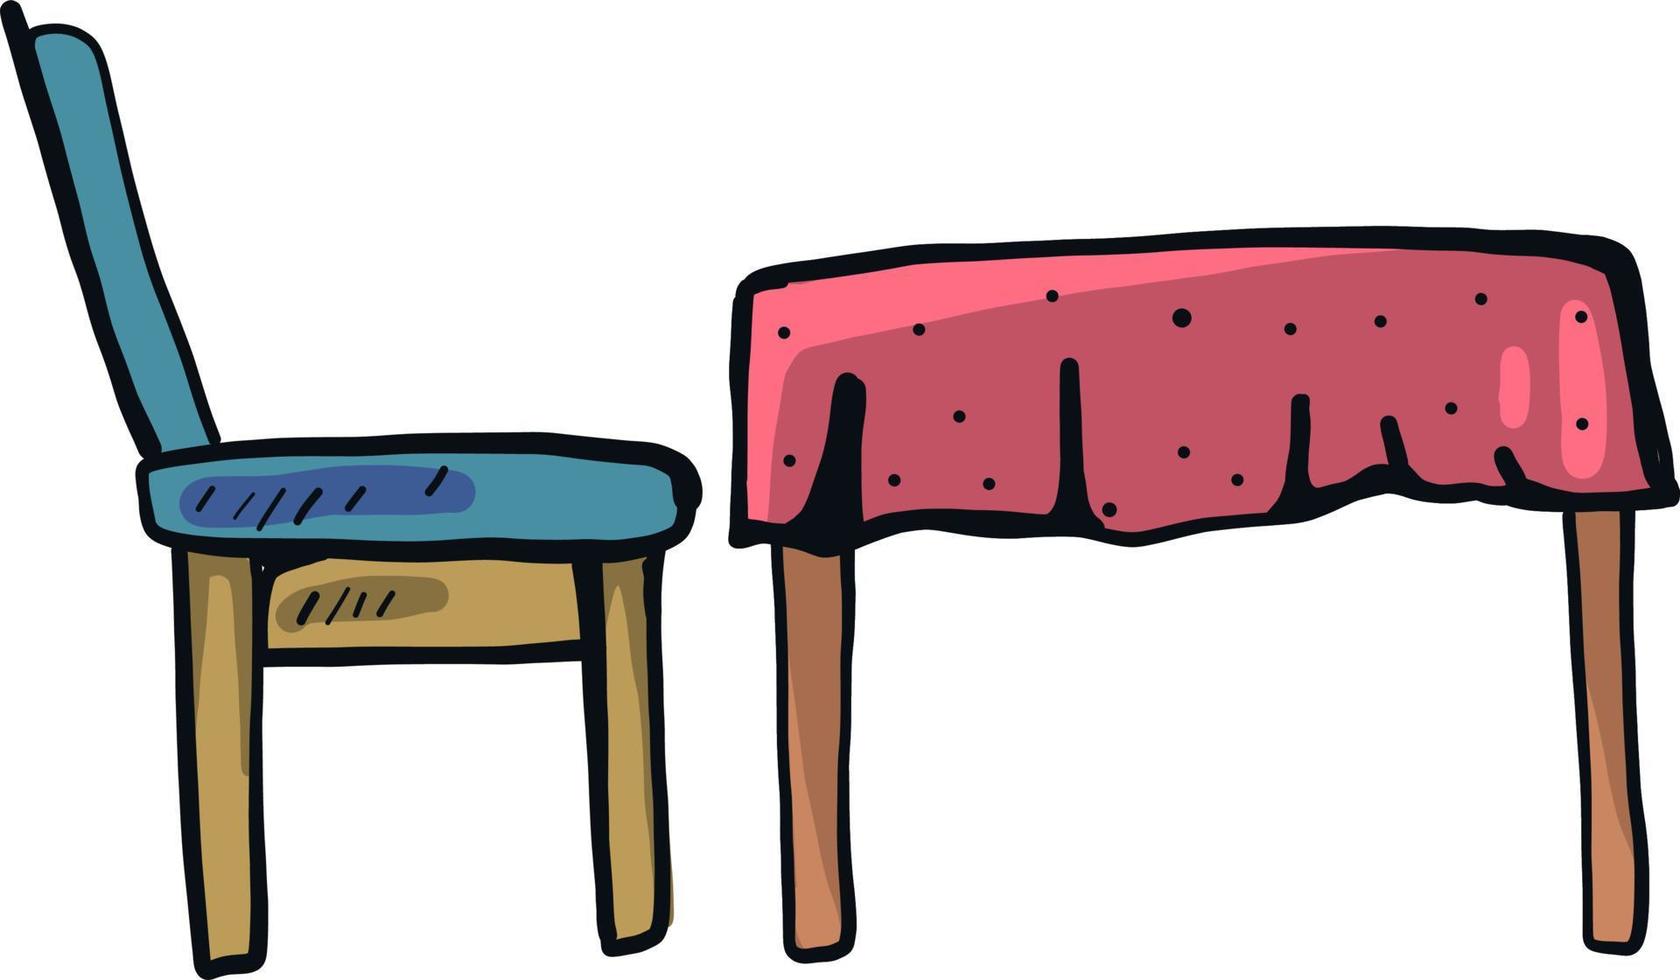 tabell och stol, illustration, vektor på en vit bakgrund.